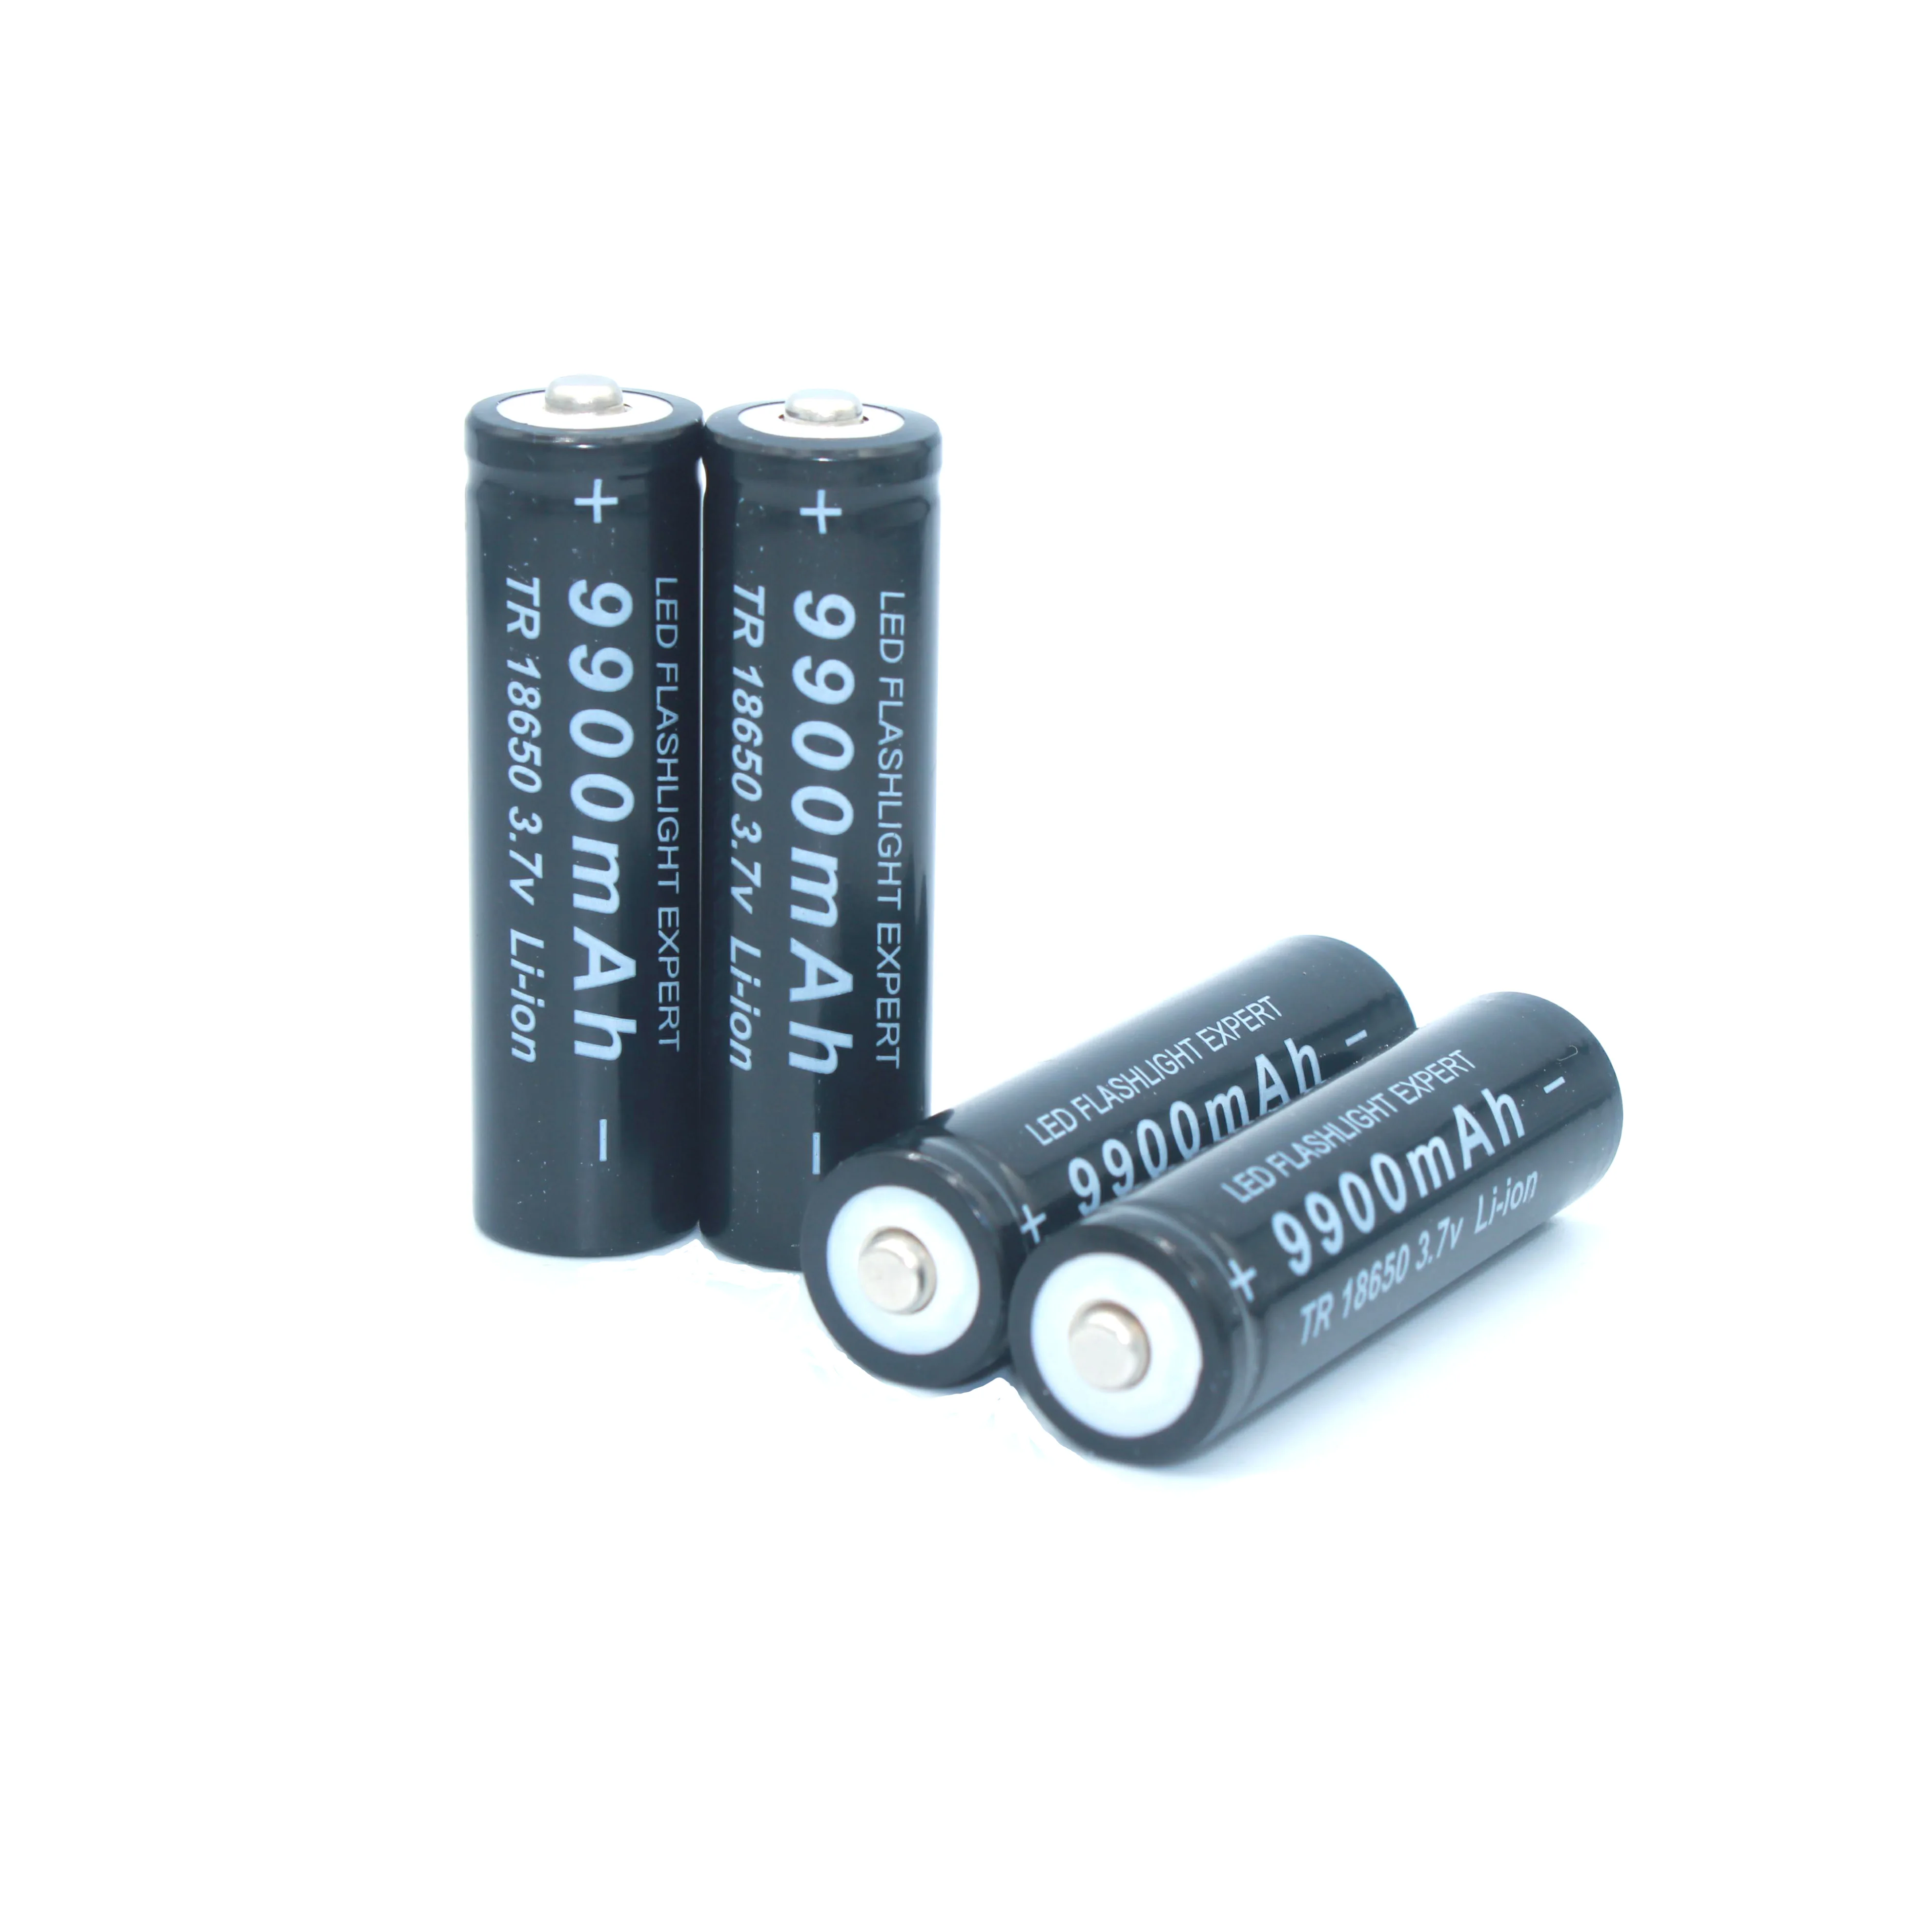 18650 bateria de alta qualidade 9900 mah 3.7 v 18650 baterias li-ion bateria recarregavel para lanterna tocha + frete už dyką 2